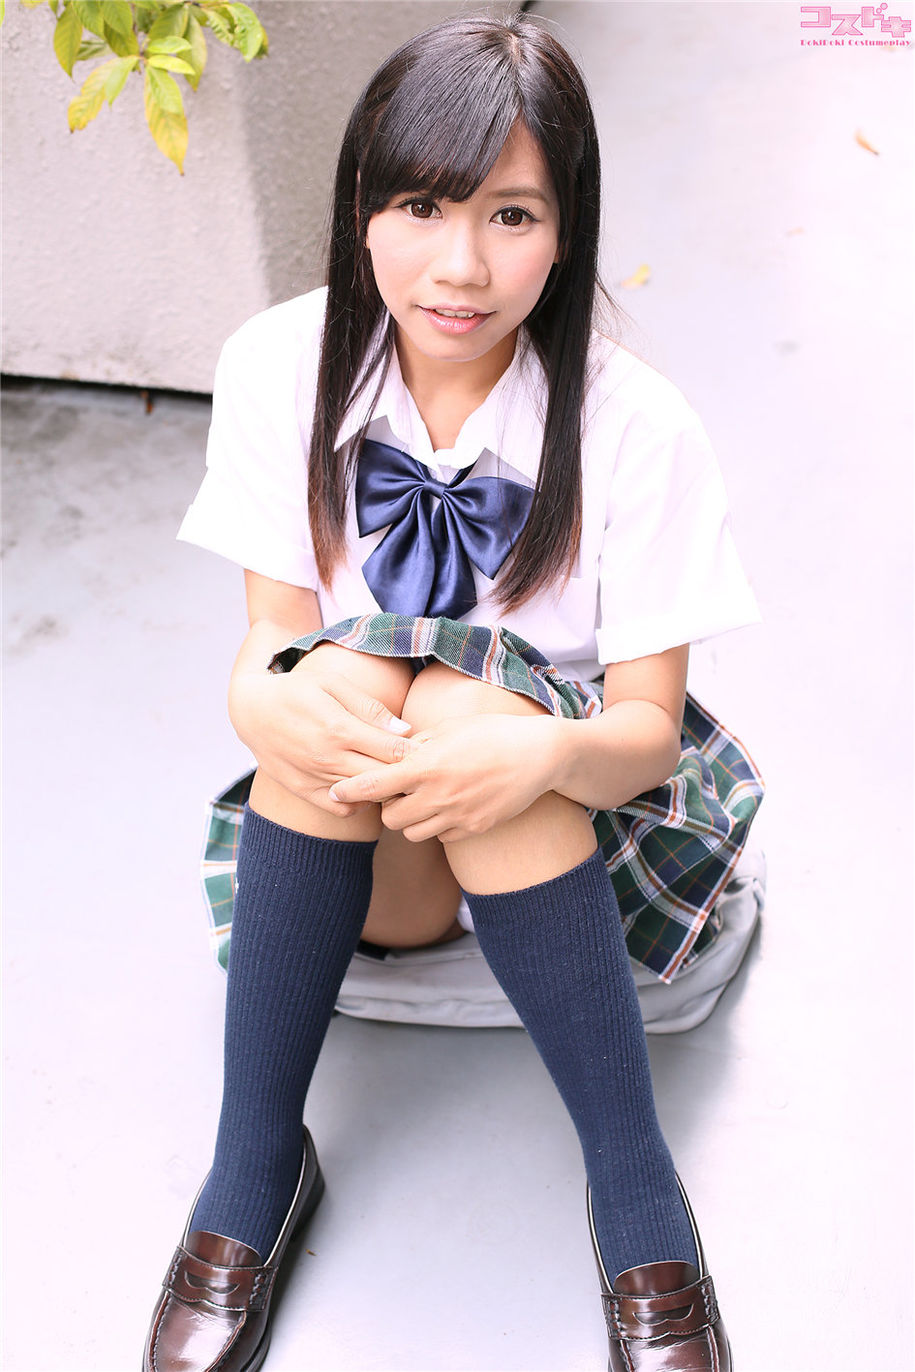 日本少女学生妹ルナ制服图片高清(第7页)